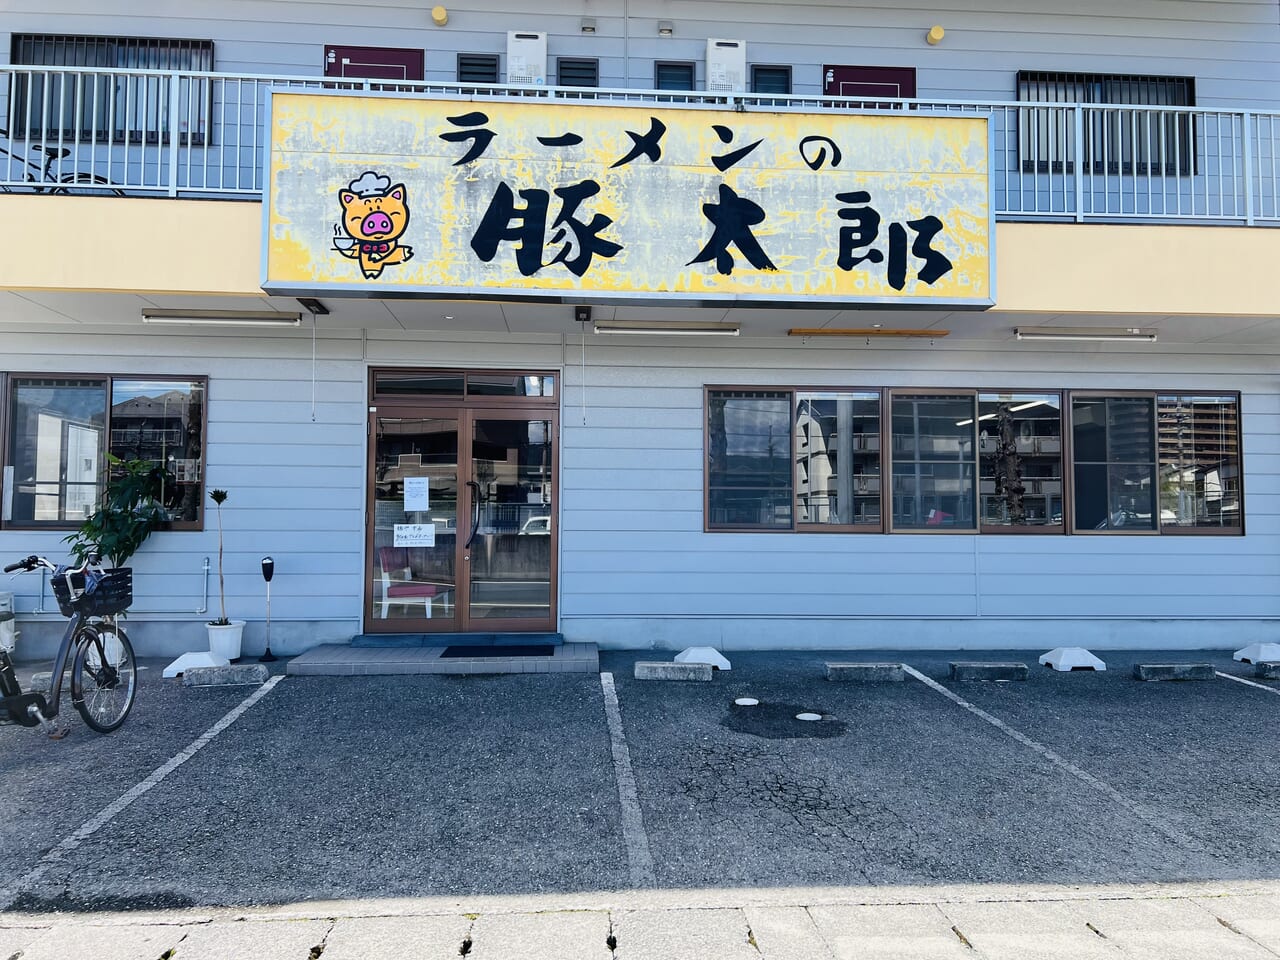 2024年4月19日に「麺や 幸希」がオープンする予定の「豚太郎 土佐道路店」跡地